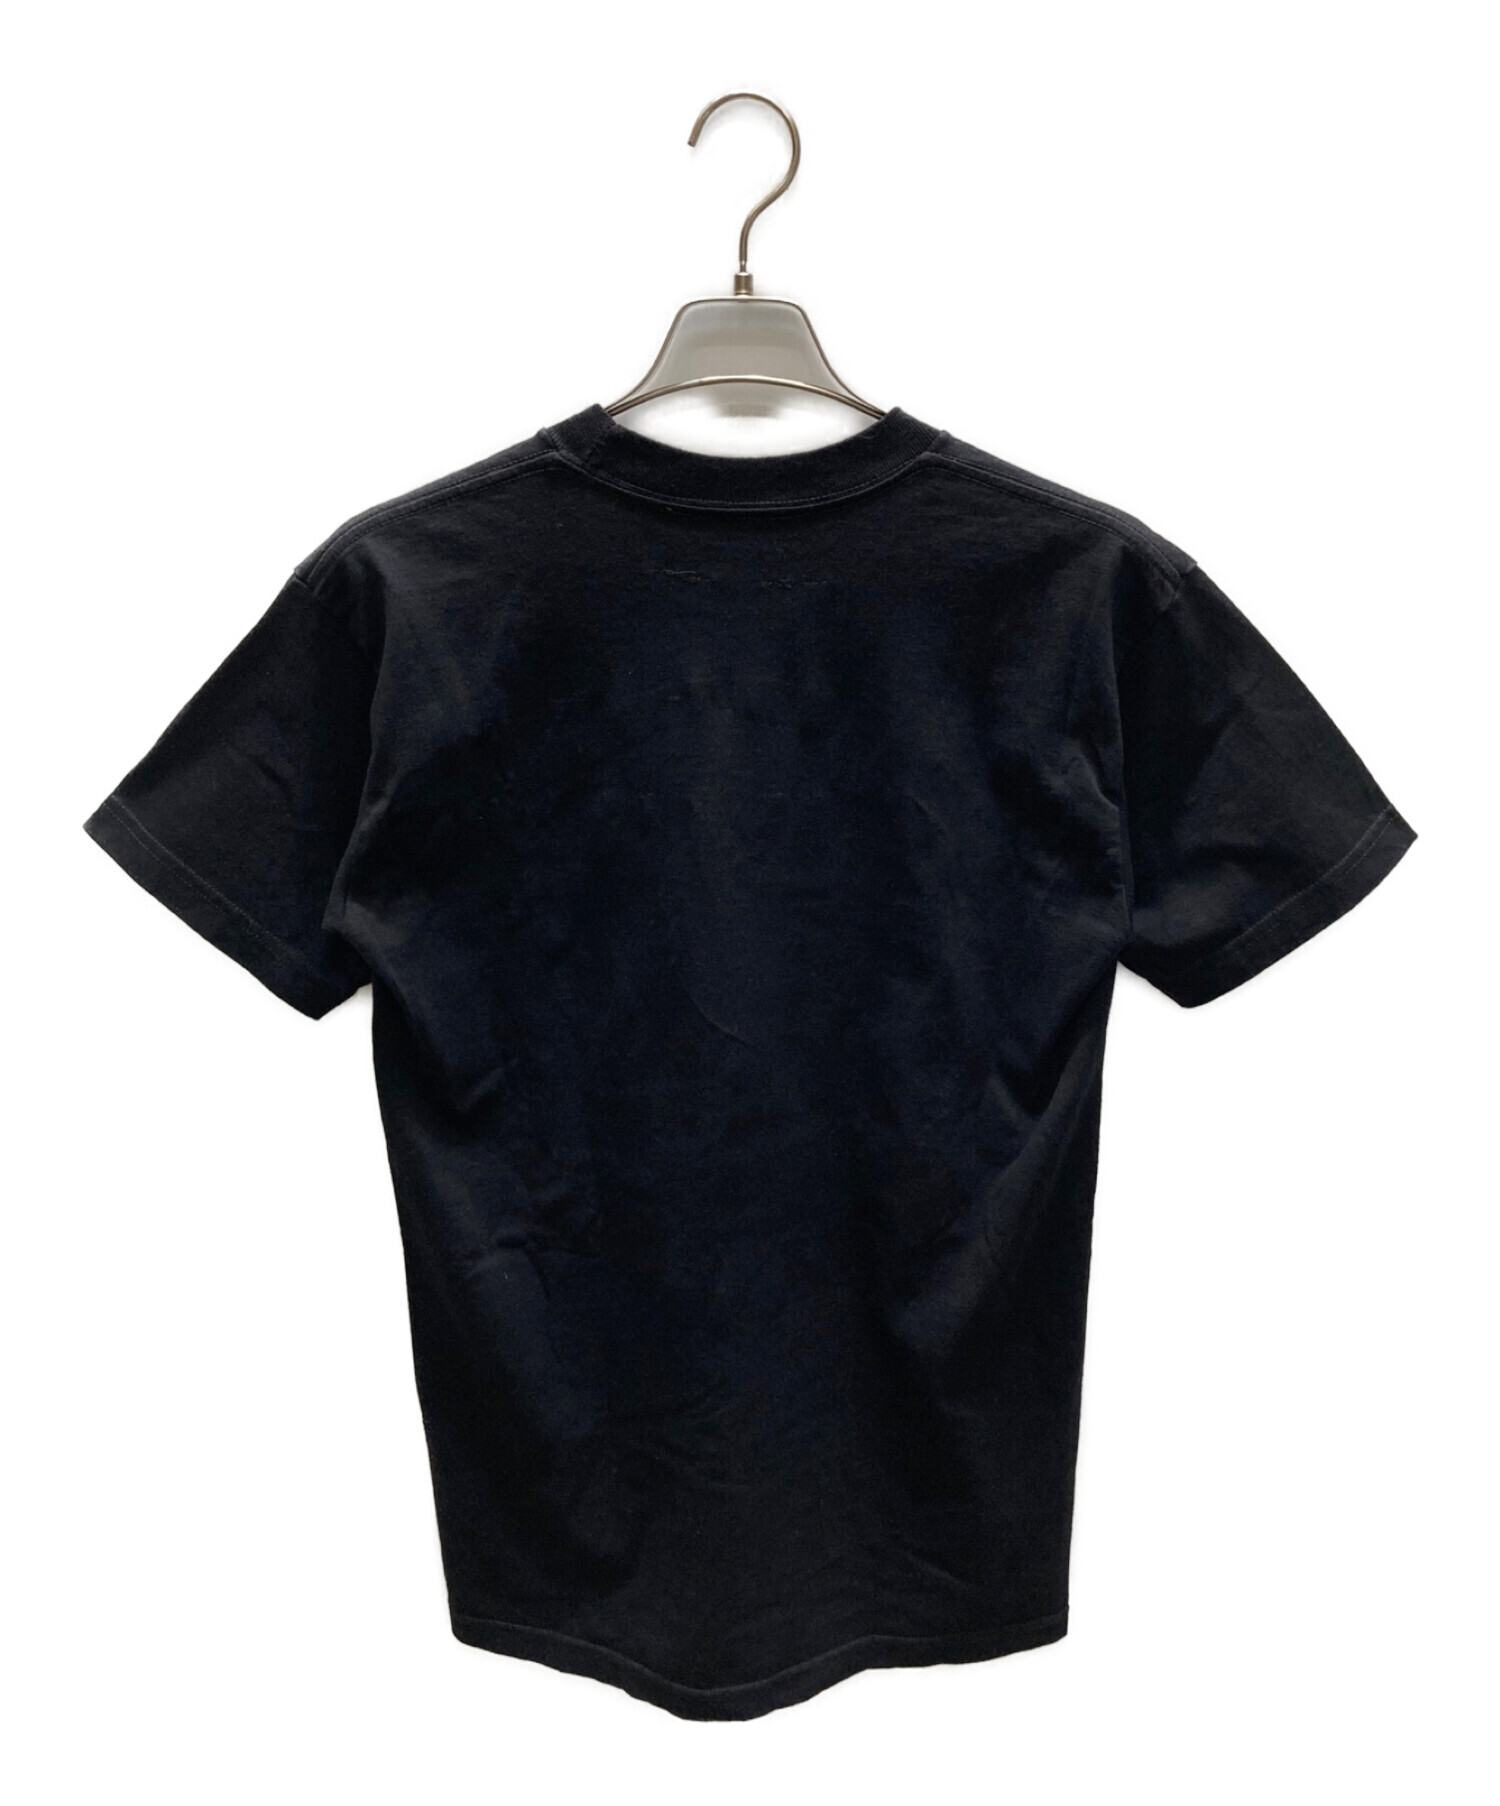 VLONE (ヴィーロン) FRAGMENT (フラッグメント) Tシャツ ブラック サイズ:M